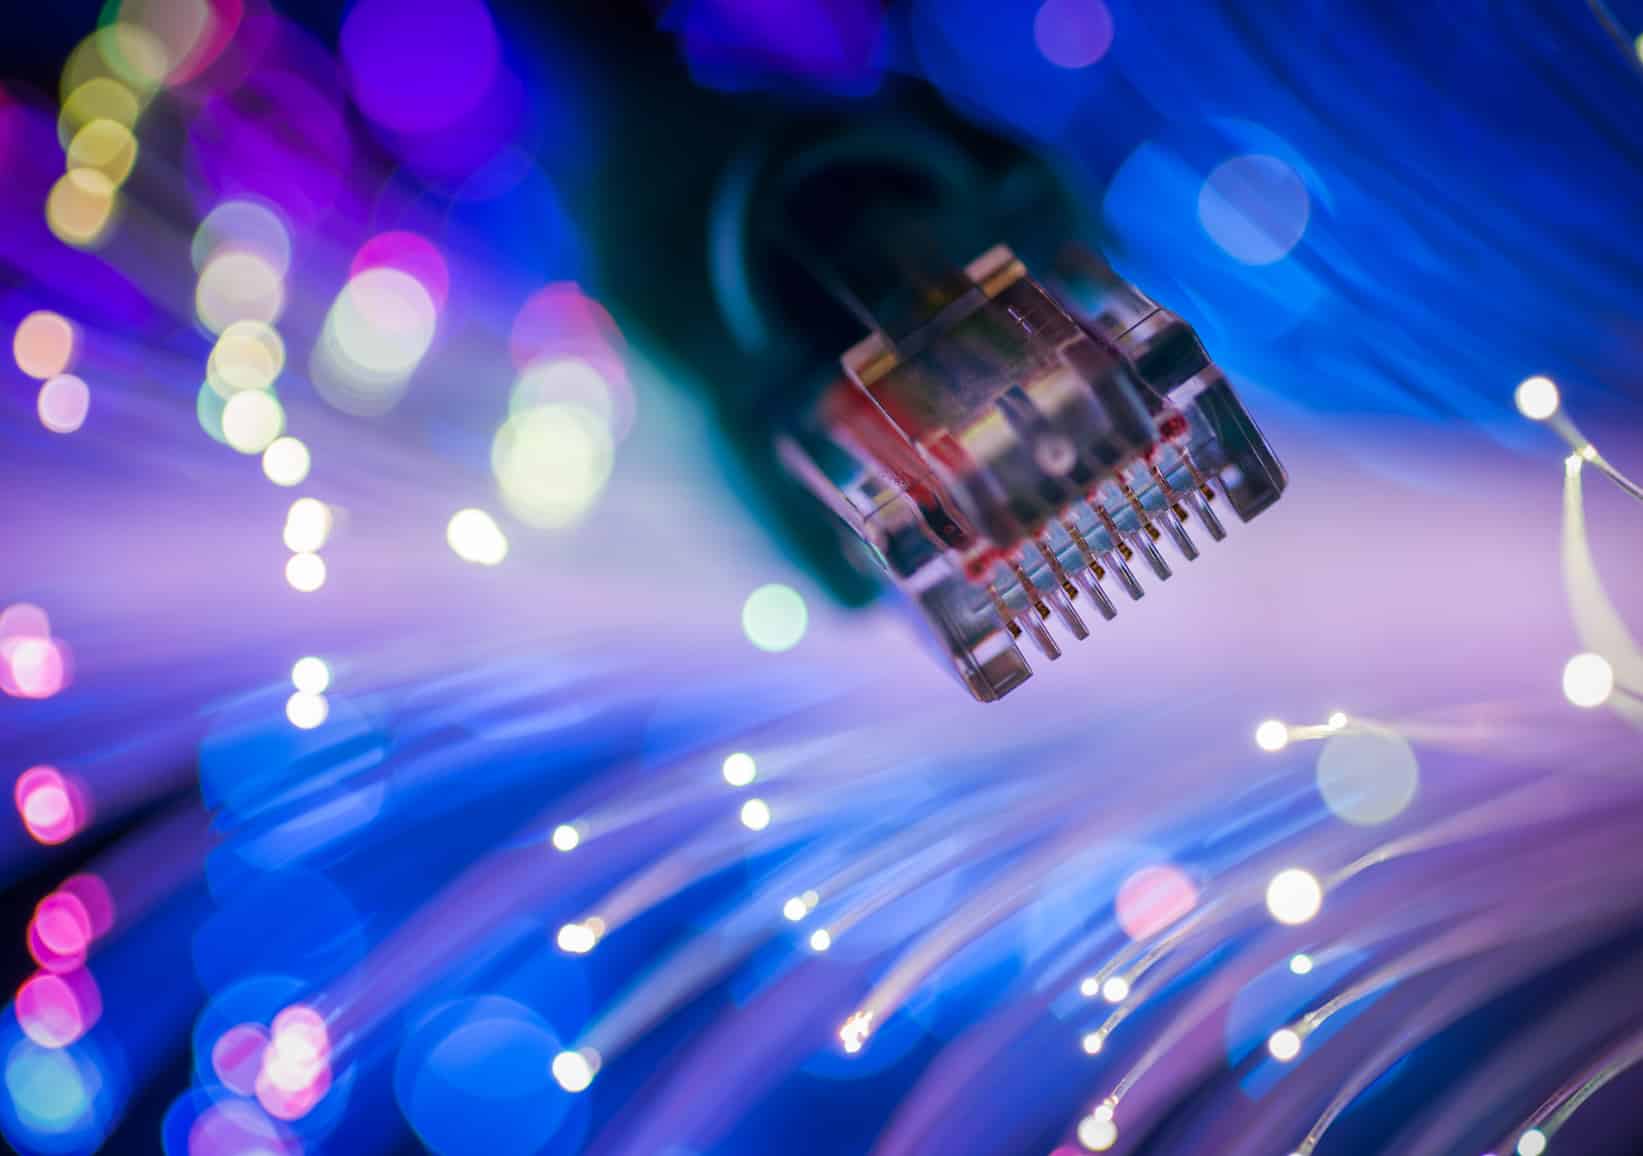 La banda ancha ha sido dinámica debido a la evolución de las capacidades y aparición de nuevas tecnologías de transmisión de datos por internet.